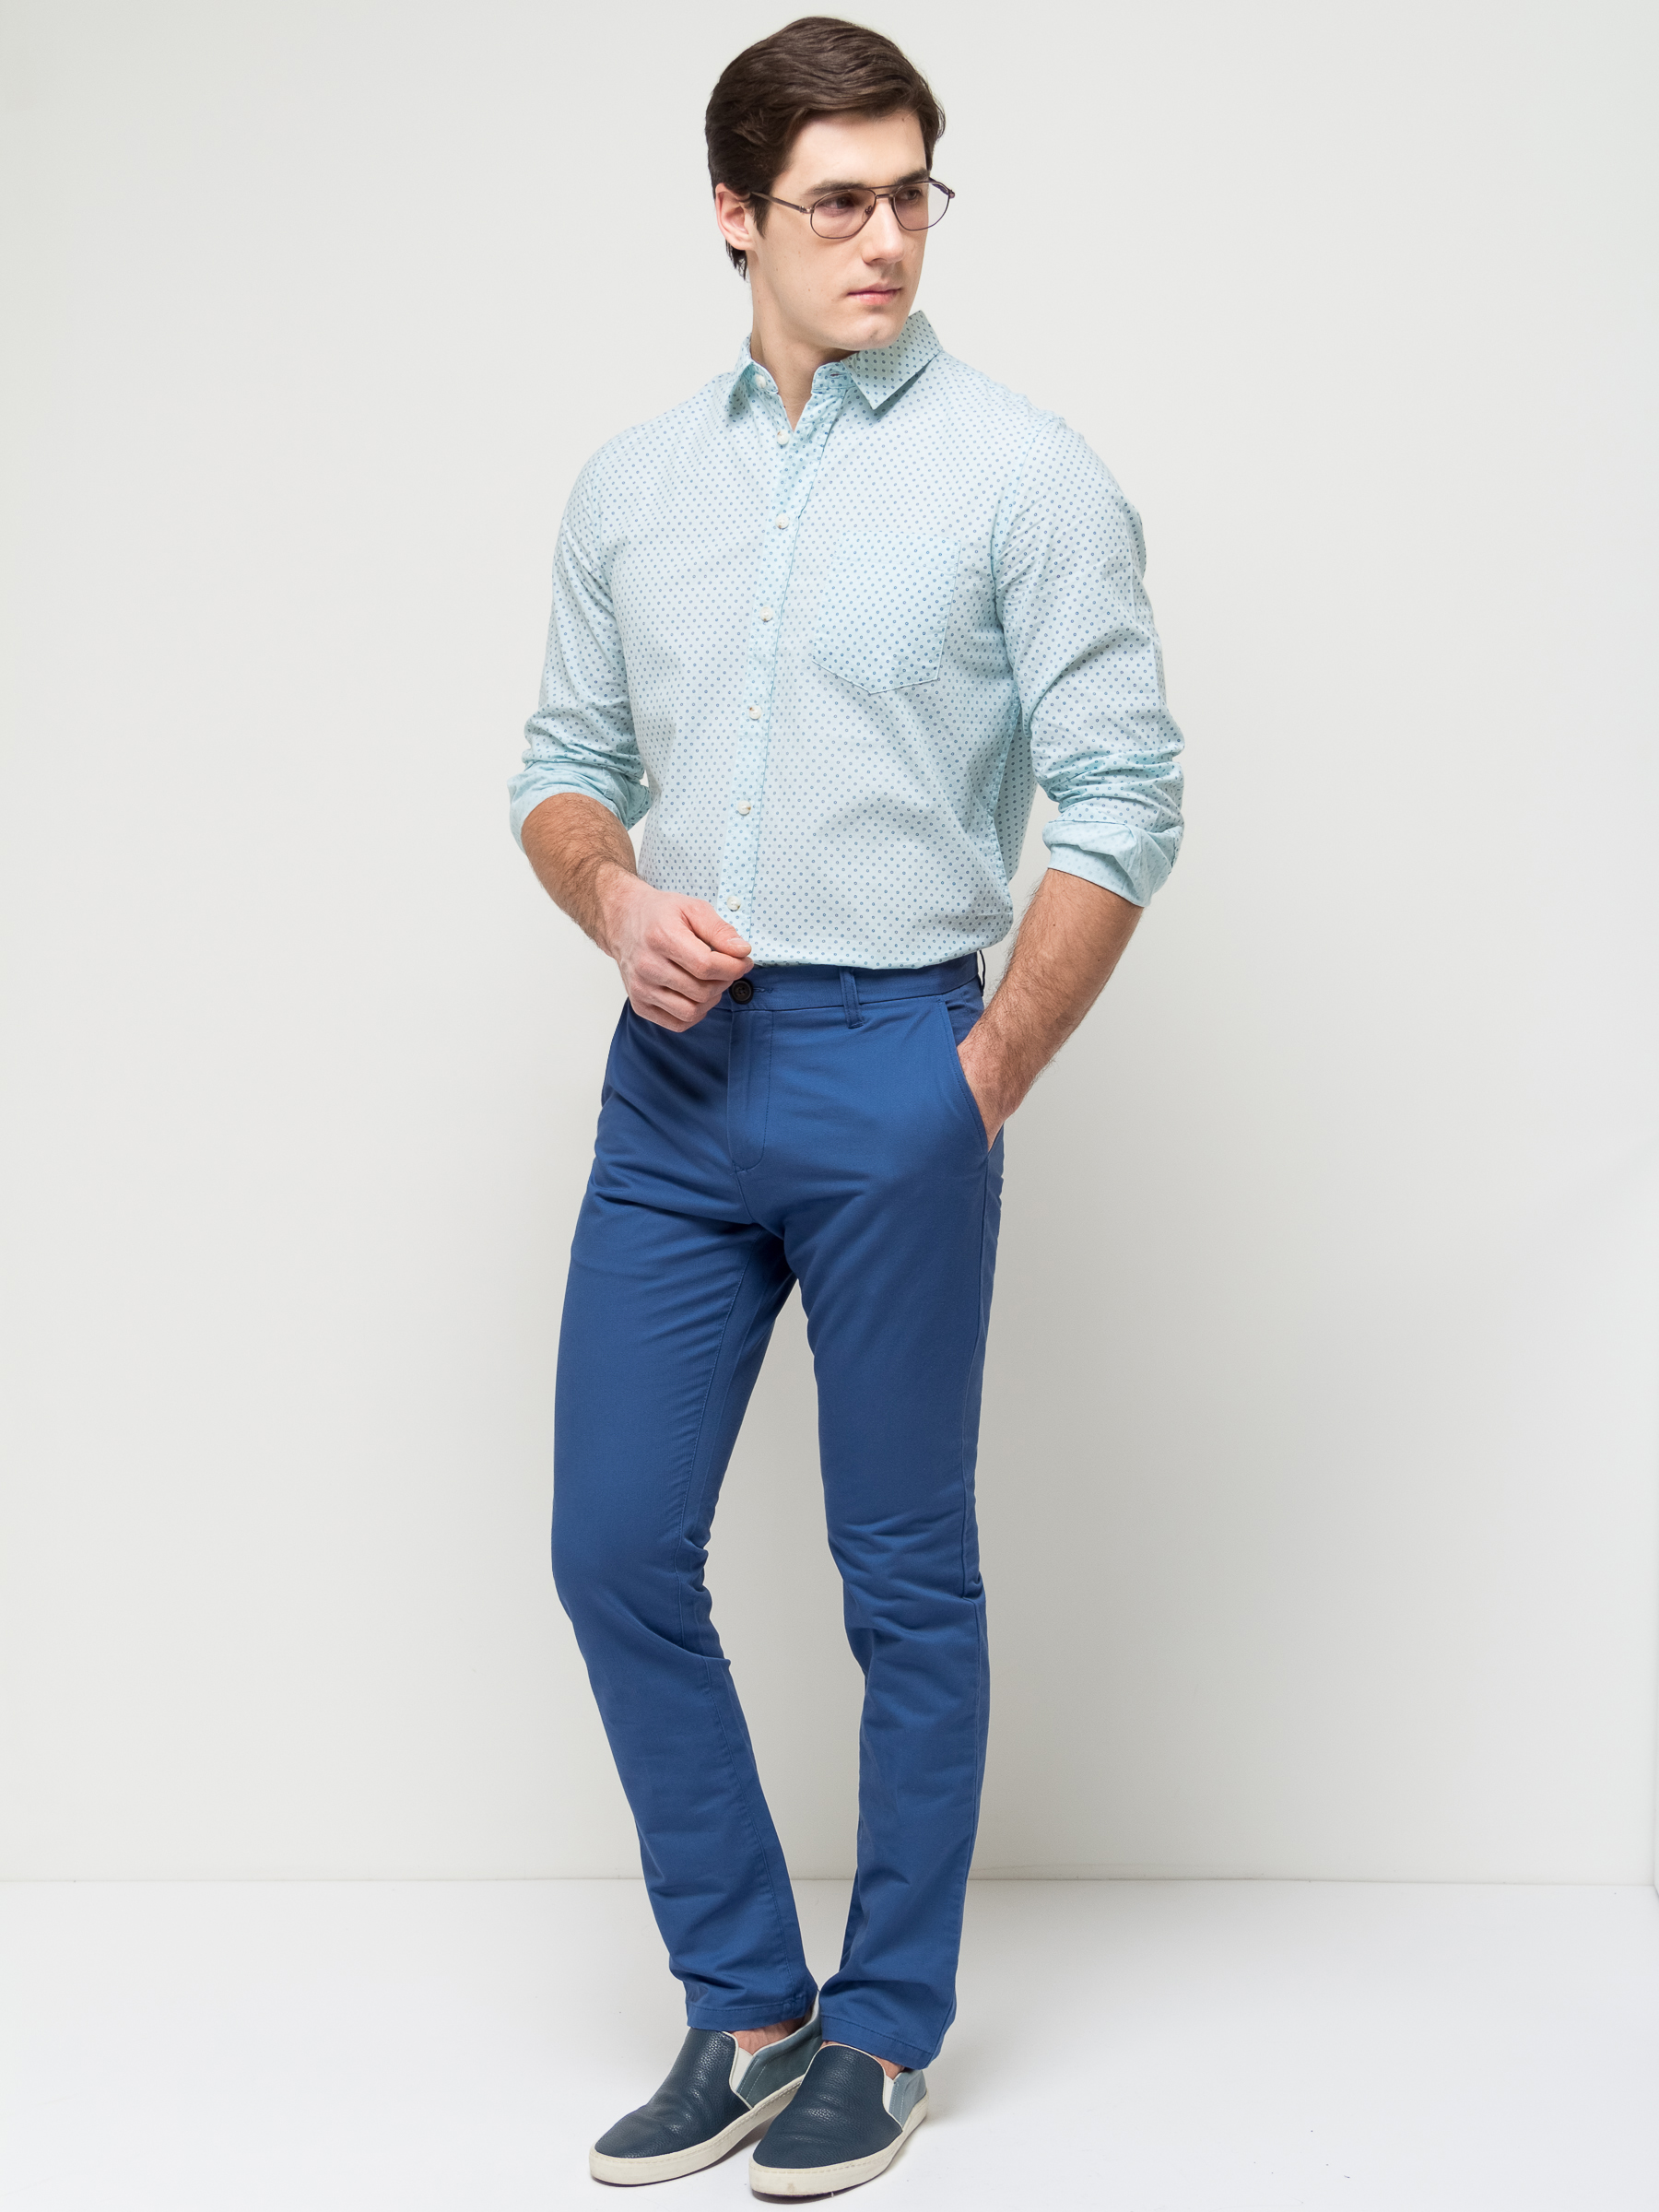 Какую рубашку одеть под синие джинсы мужские